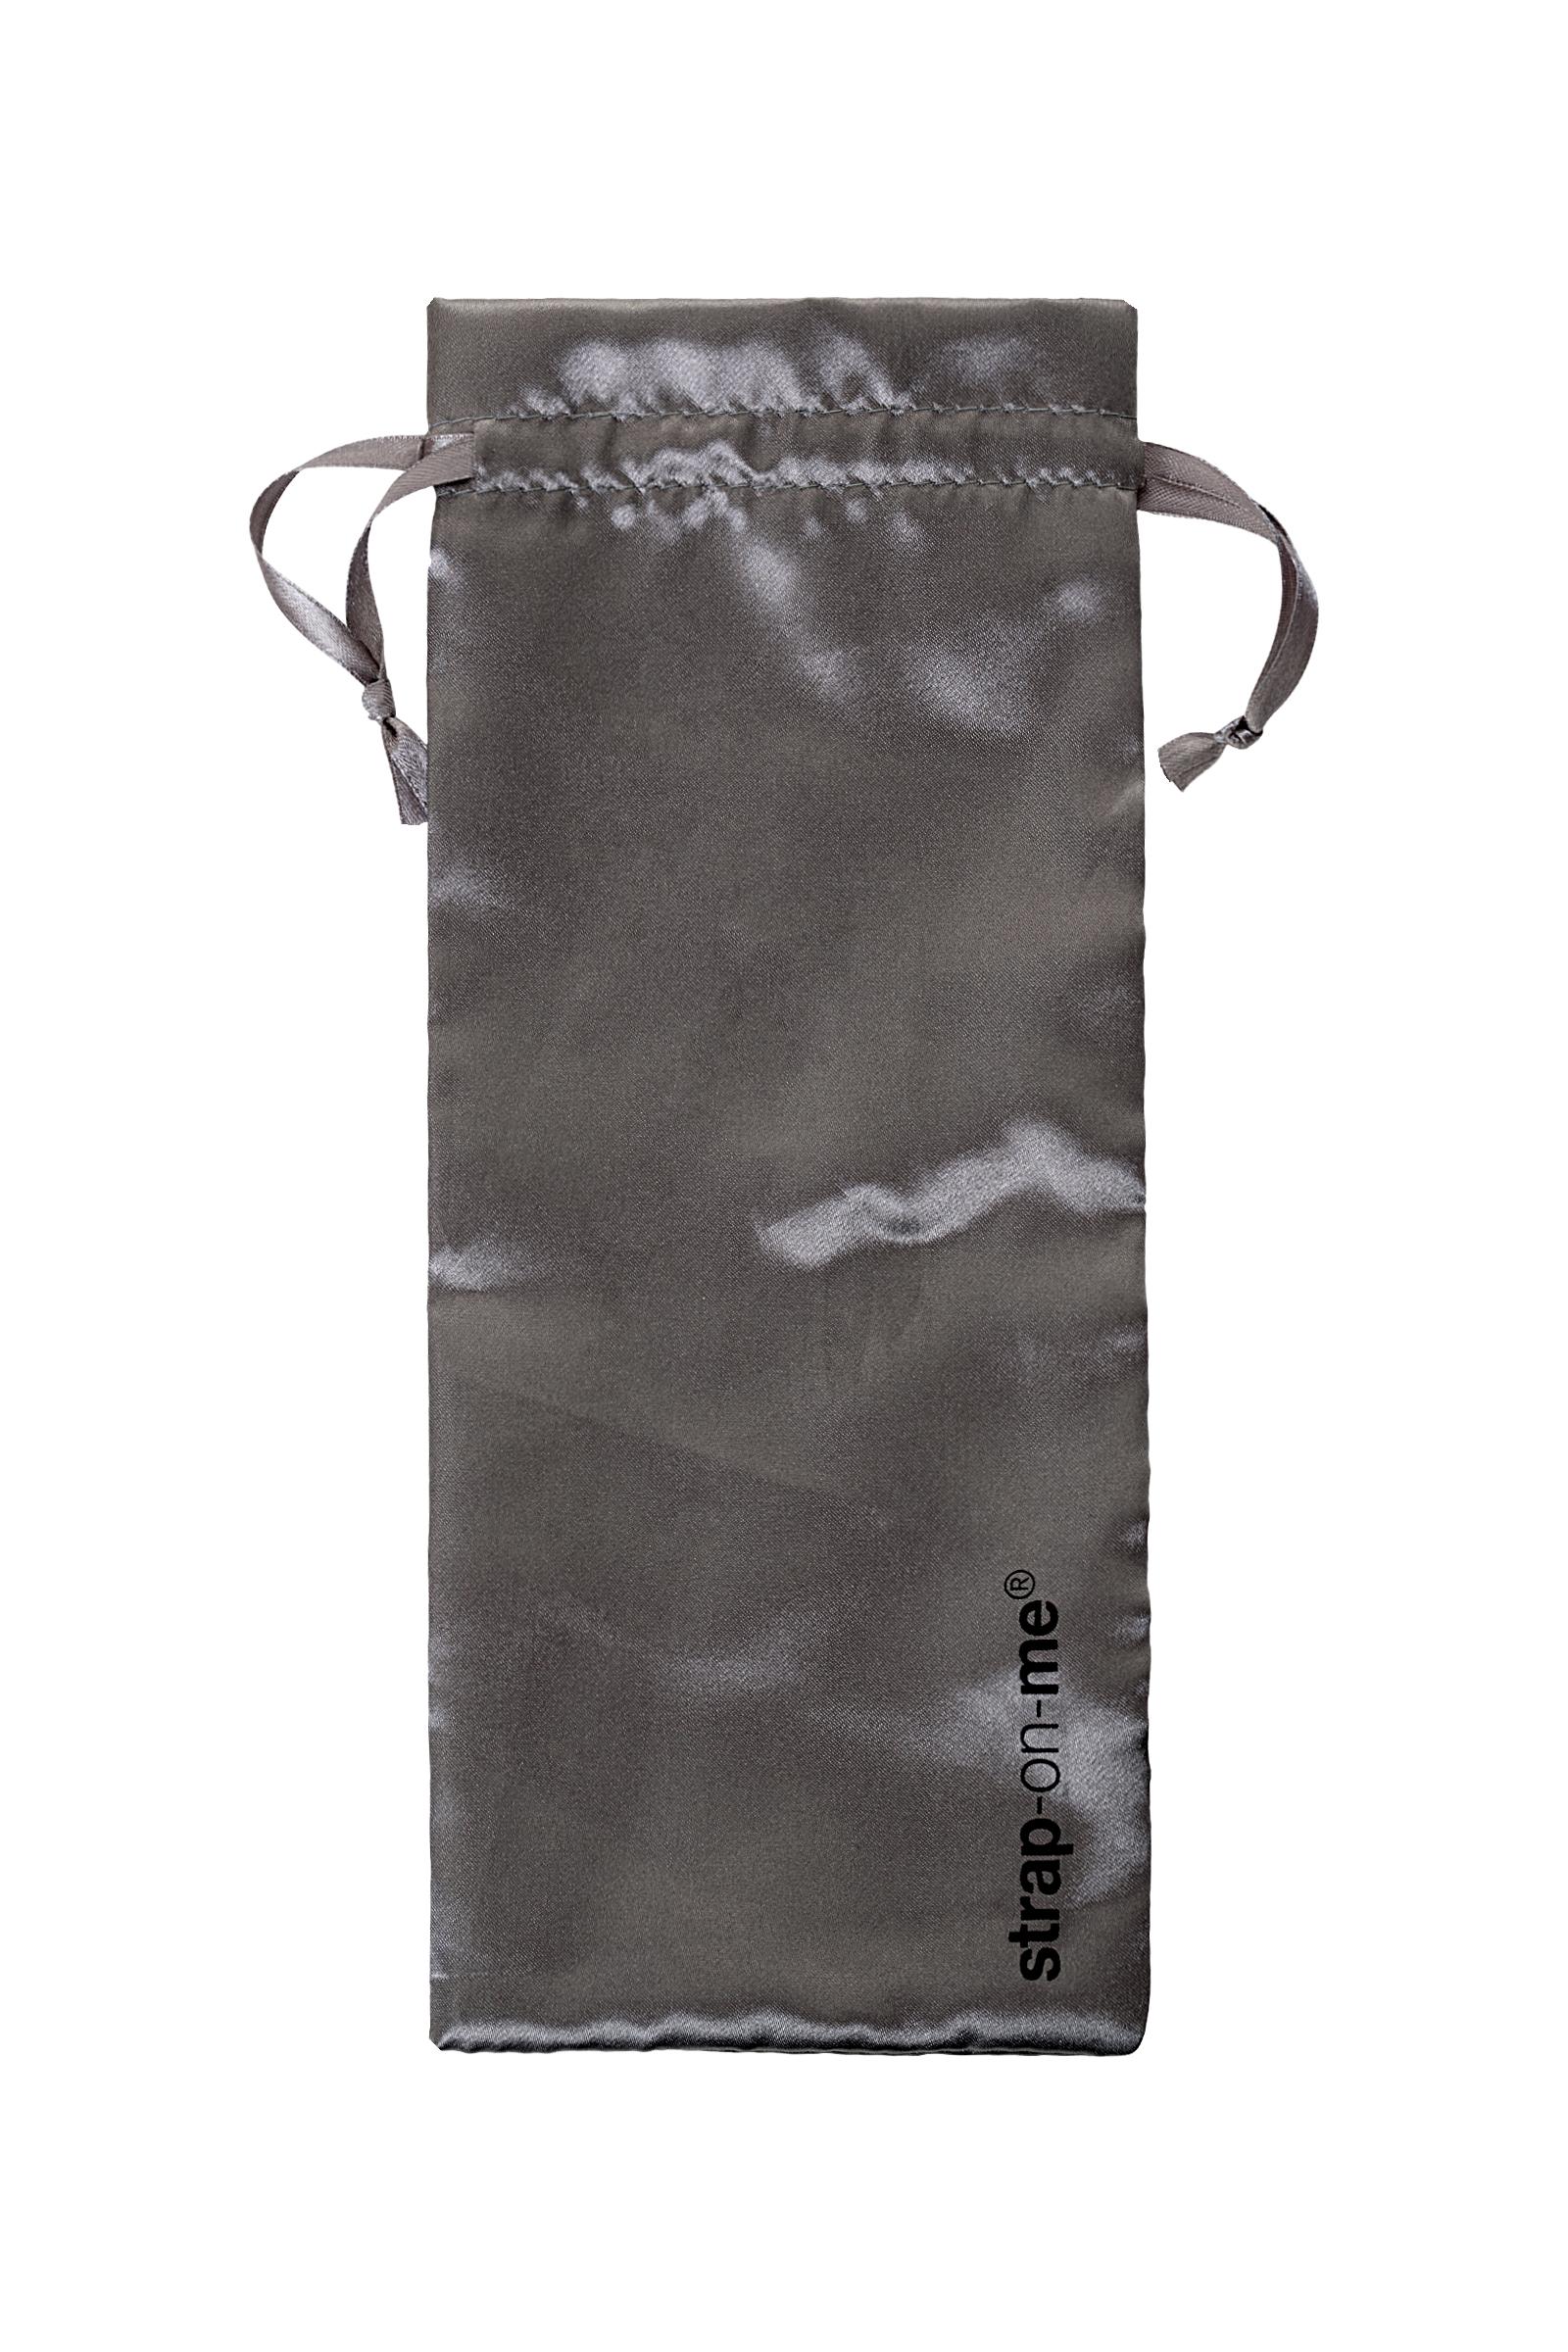 Ремневой нереалистичный страпон на присоске Strap-on-me, L, силикон, черный, 19 см Vestalshop.ru - Изображение 4